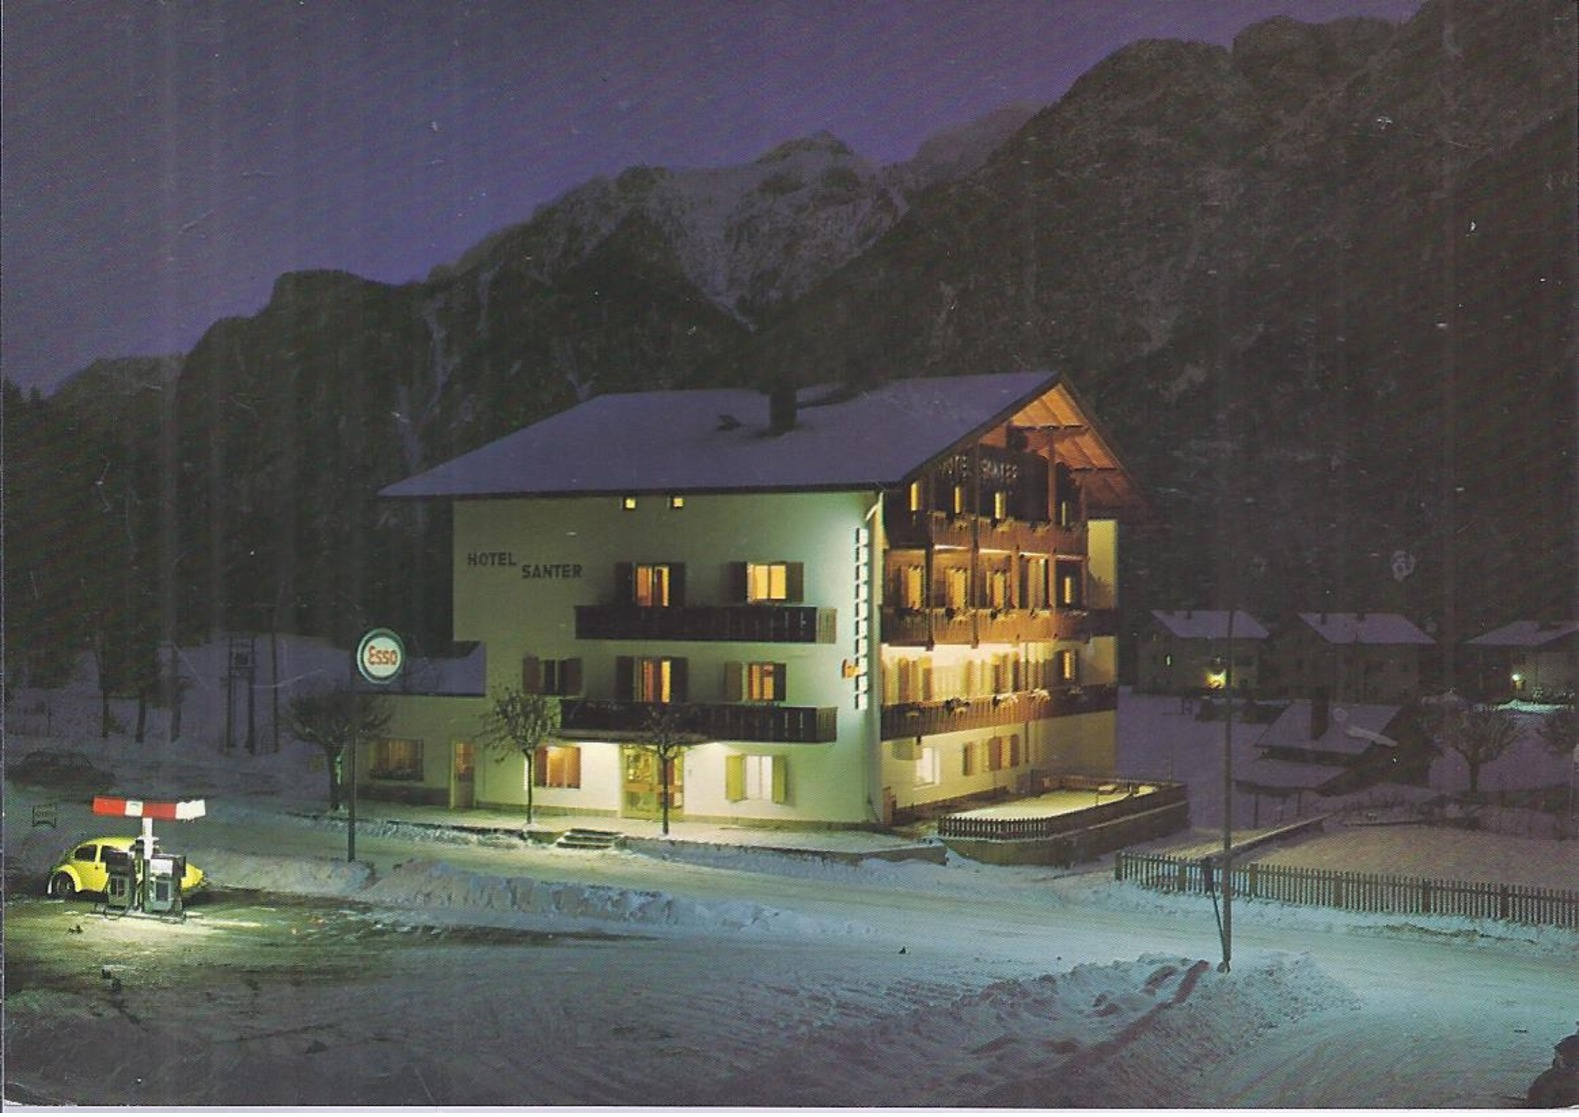 AK-74089-110  -   Toblach - Dobbiaco - Bez. Bozen  - Hotel Santer - Nachtansicht - Bolzano (Bozen)